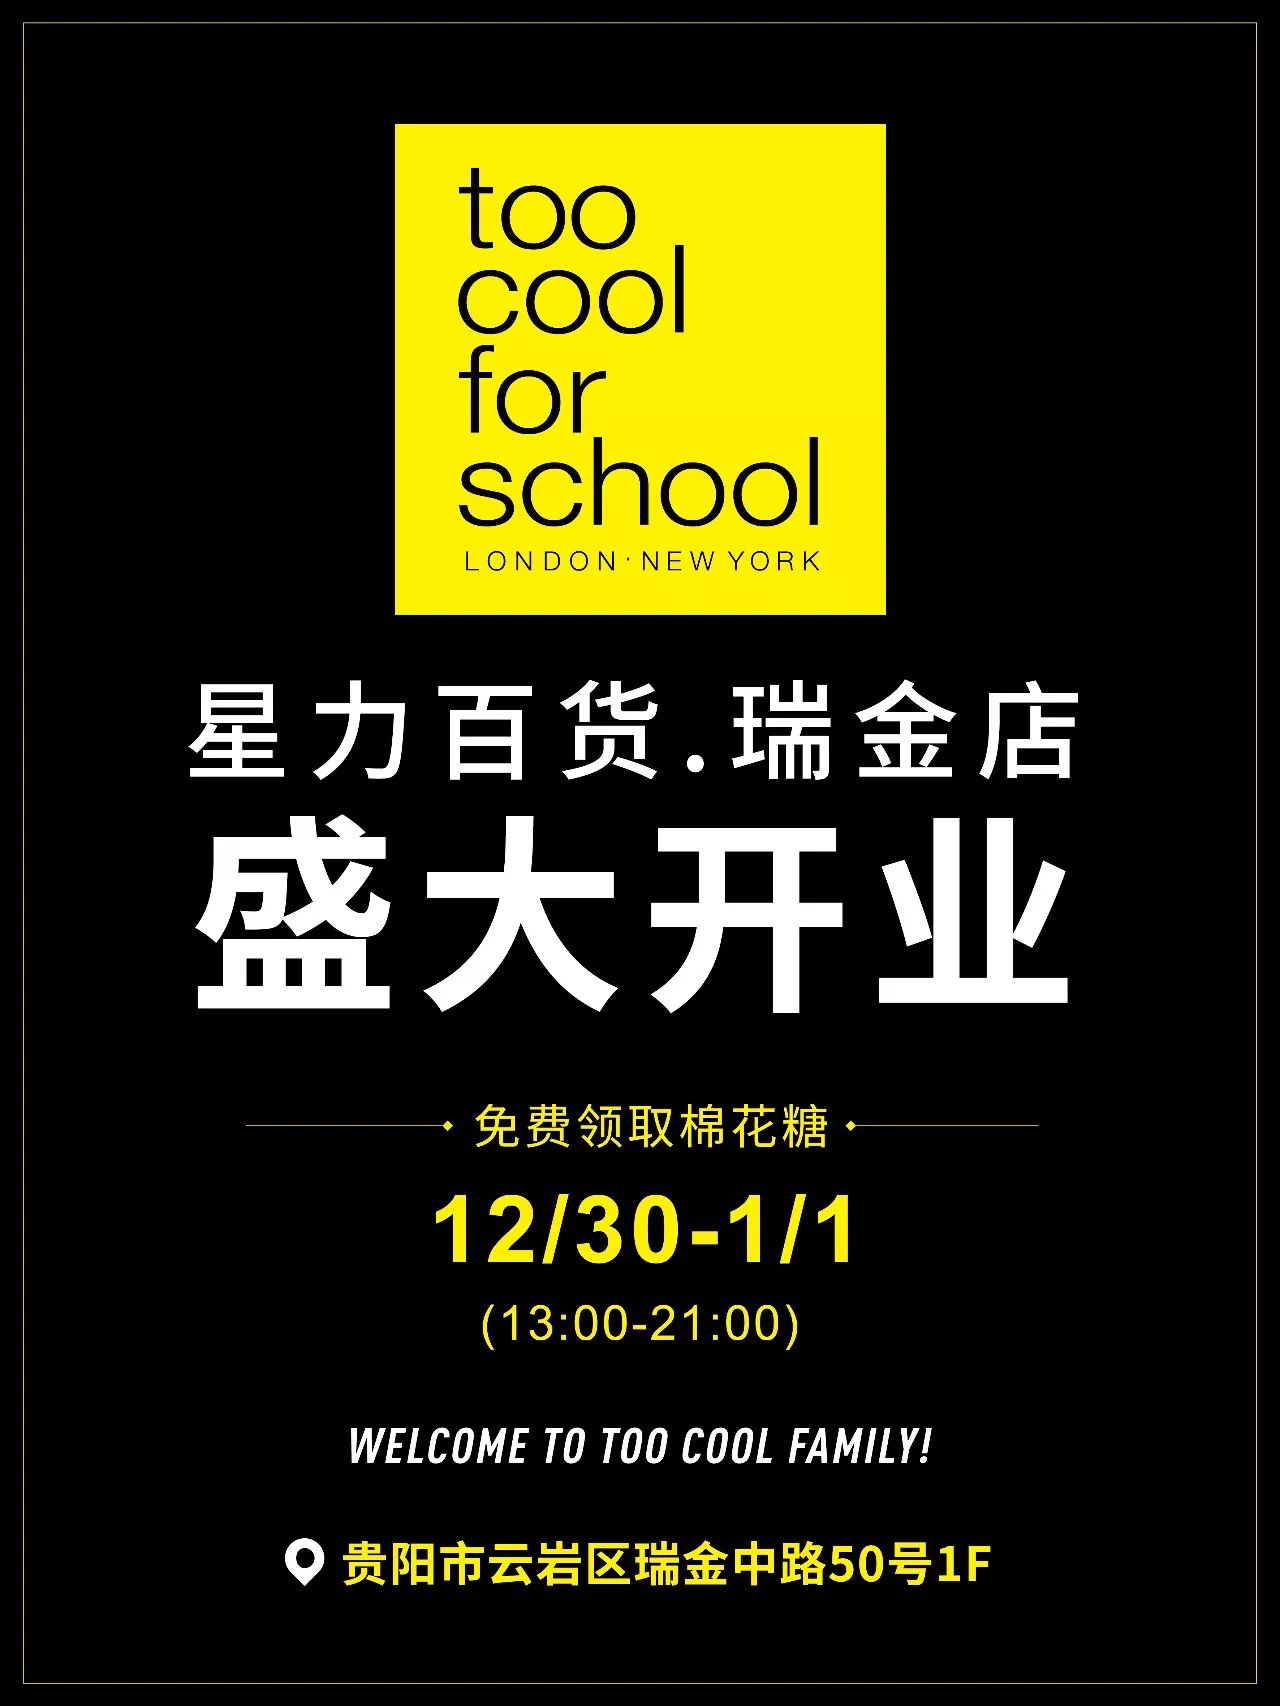 too cool for school 贵阳星力百货瑞金店12月30日盛大开业!